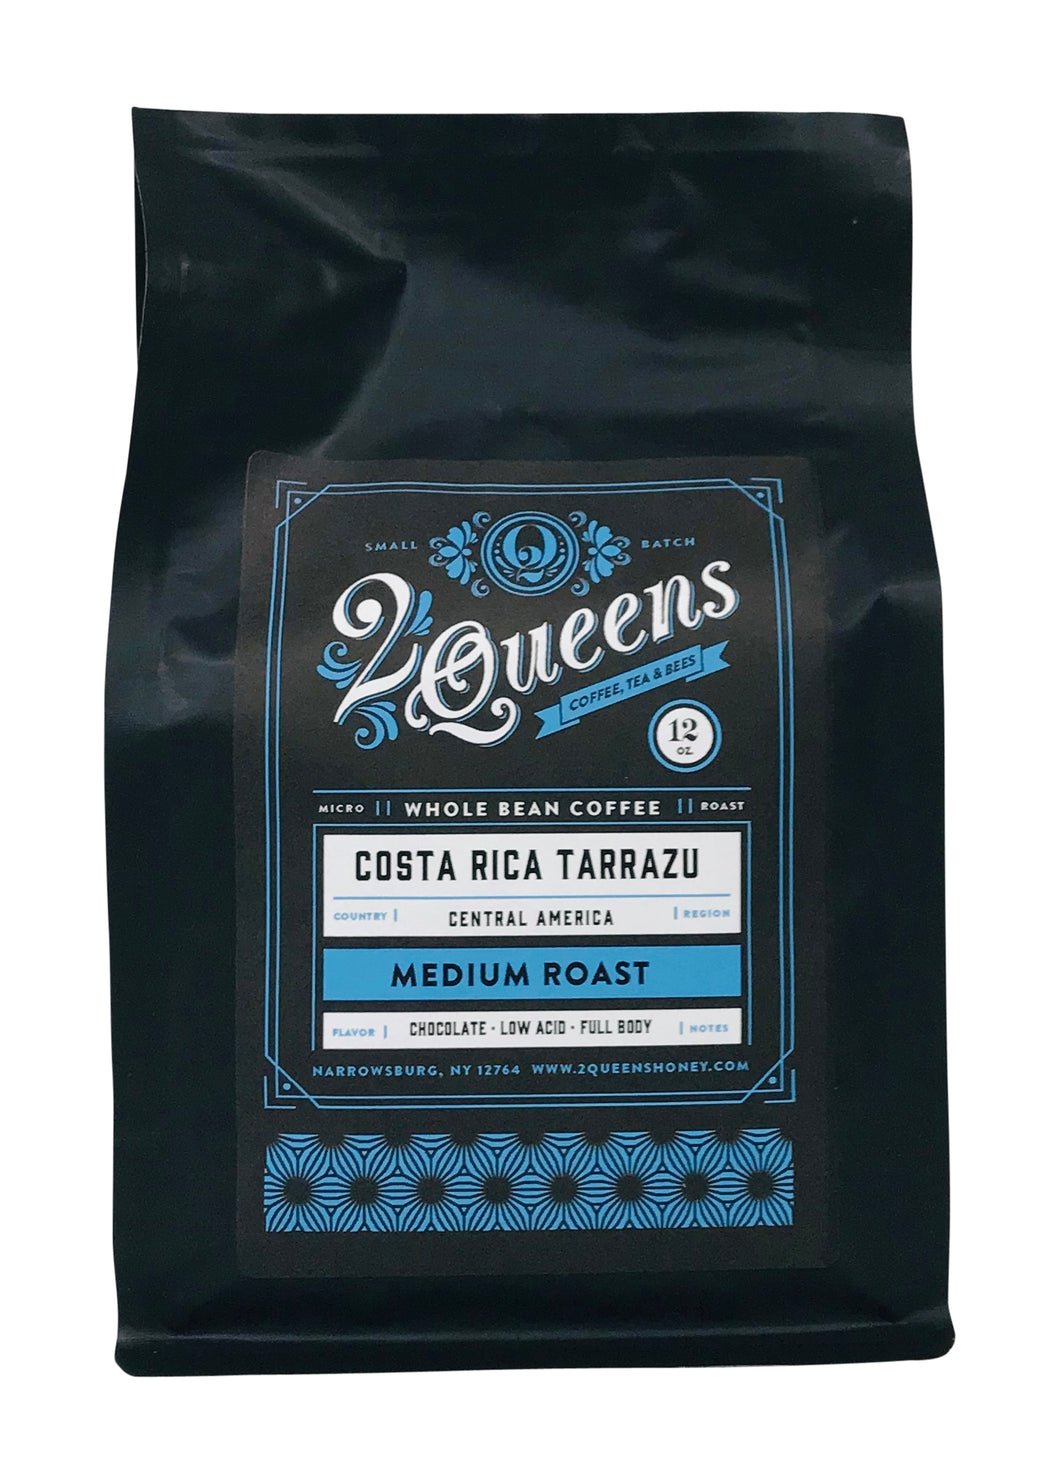 Costa Rica Tarrazu Coffee